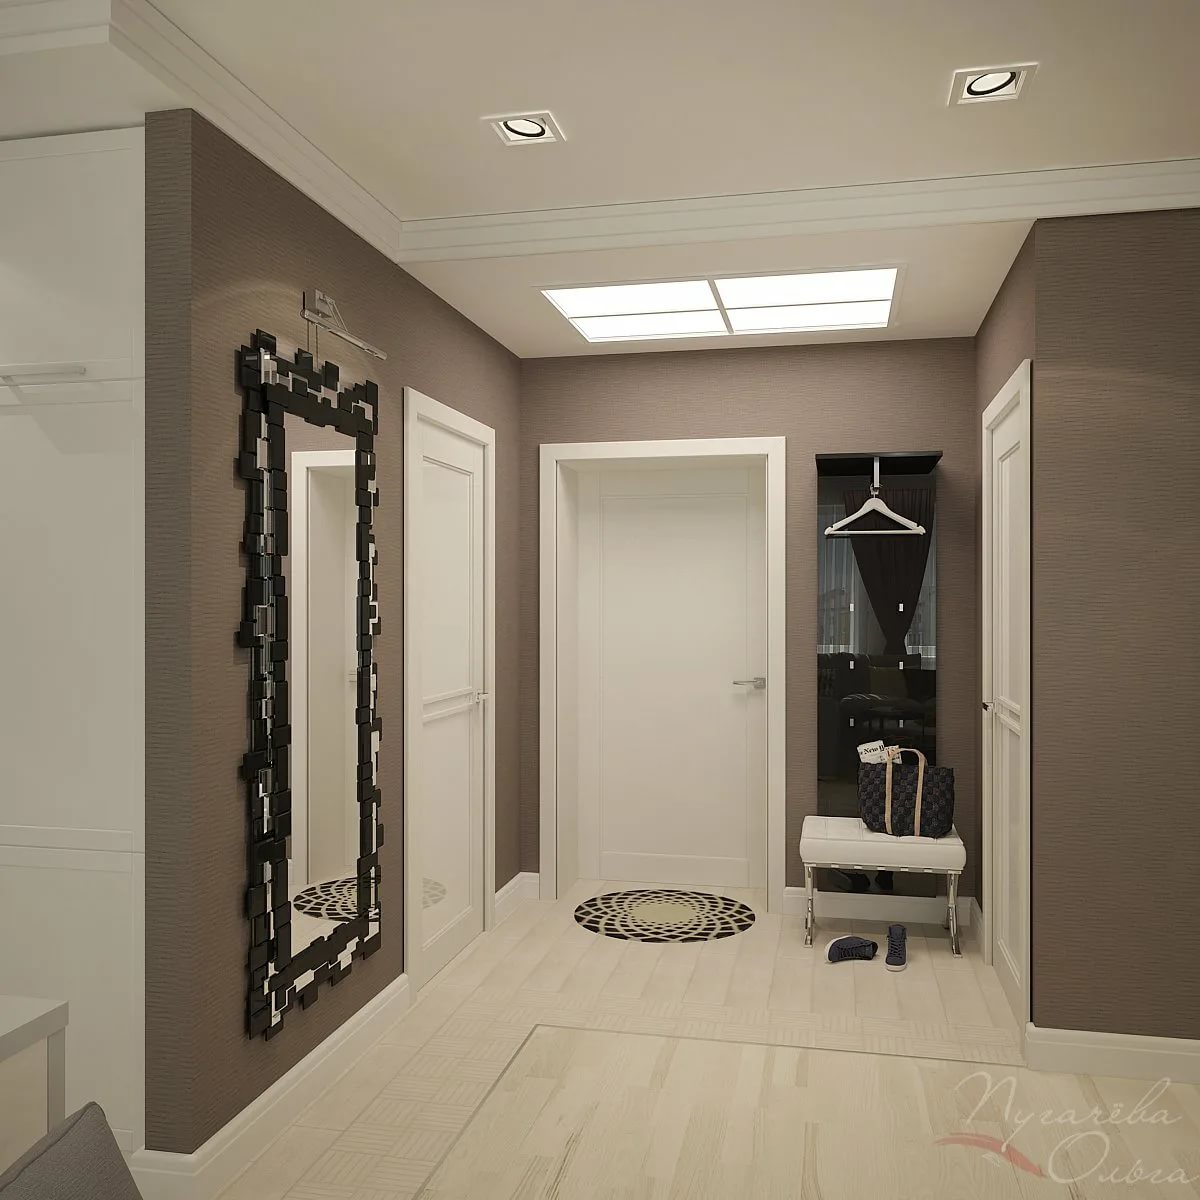 Дизайн коридора в квартире 12 кв м. дизайн квадратной прихожей — фото интерьера. стилистическое оформление прихожей